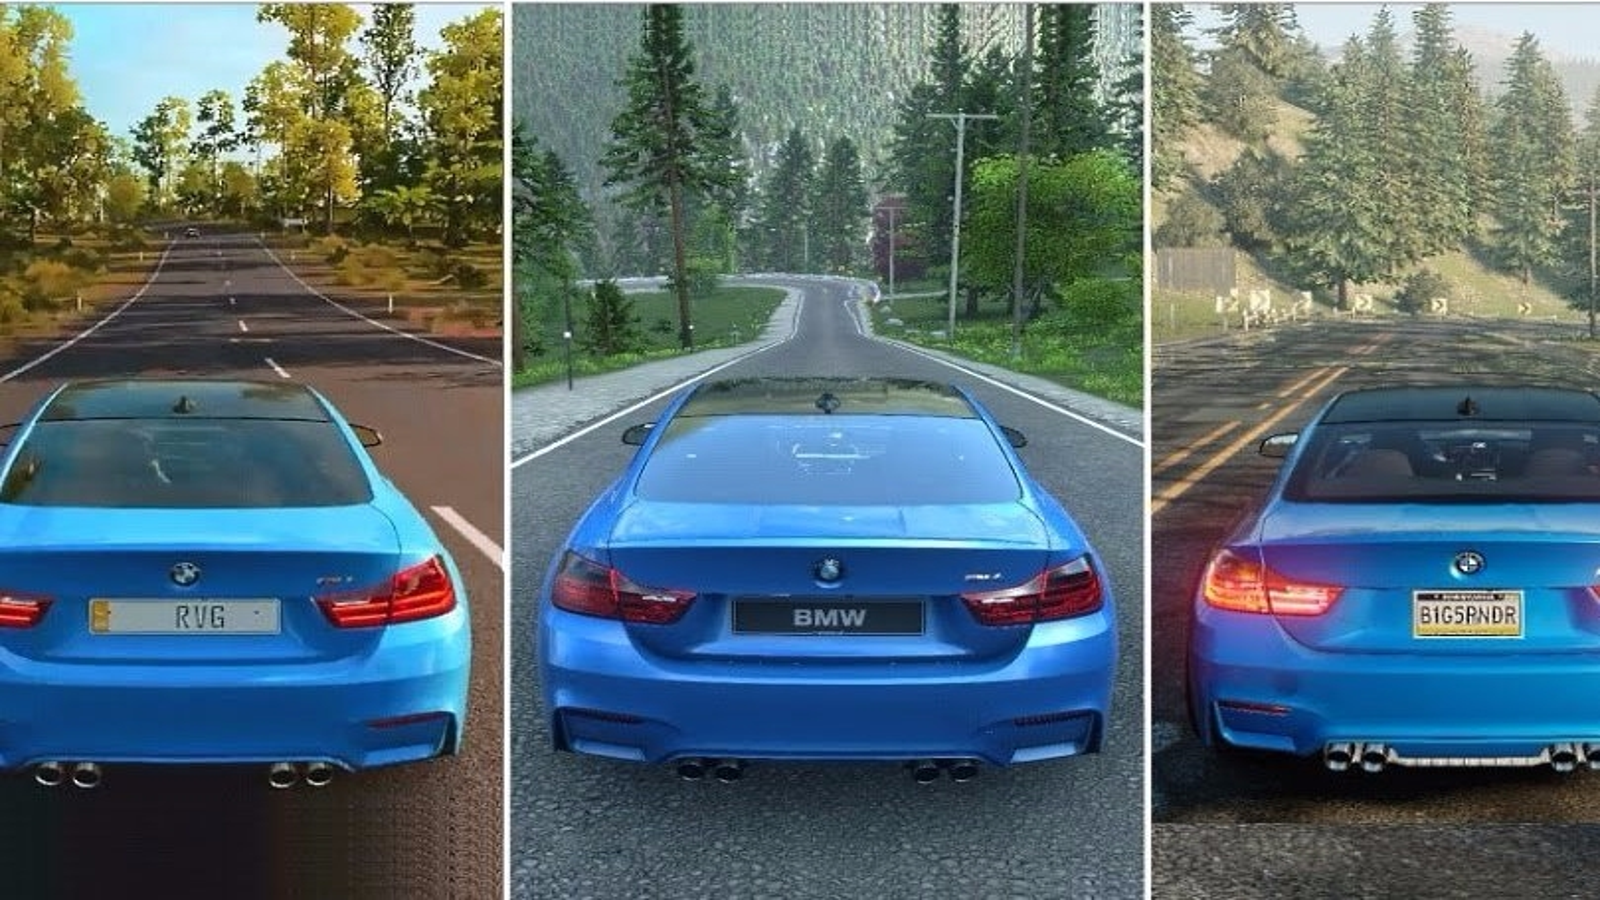 Forza Horizon 3 vs DriveClub vs The Crew vs NFS Graphics Comparison